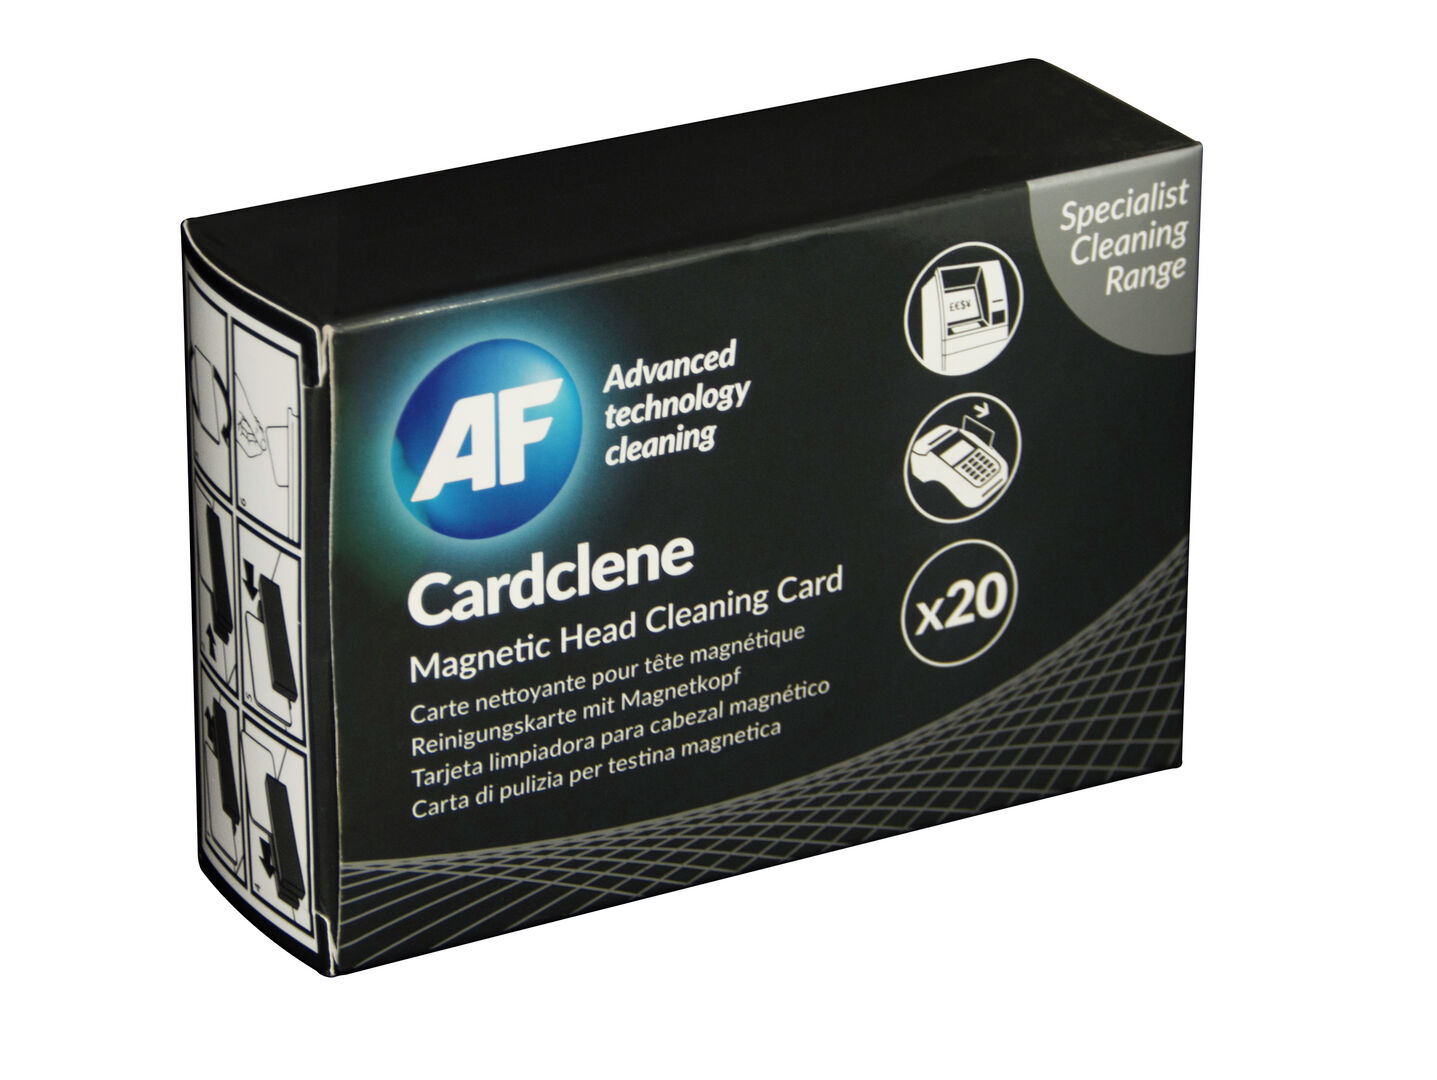 AF Cardclene puhdistuskortti